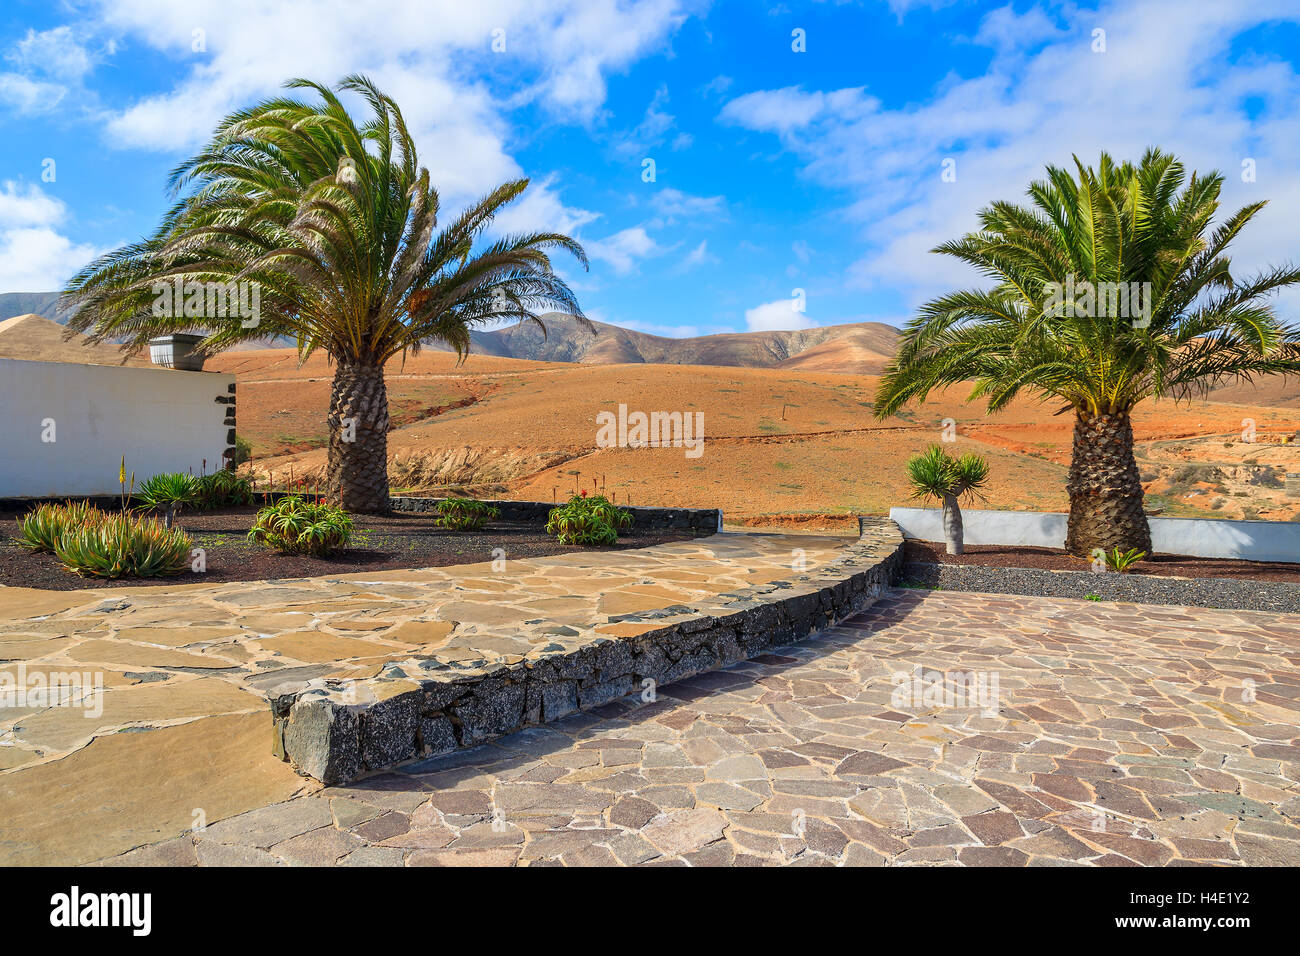 Palmeras en la plaza de la aldea en el paisaje de montañas volcánicas de la isla de Fuerteventura, ESPAÑA Foto de stock